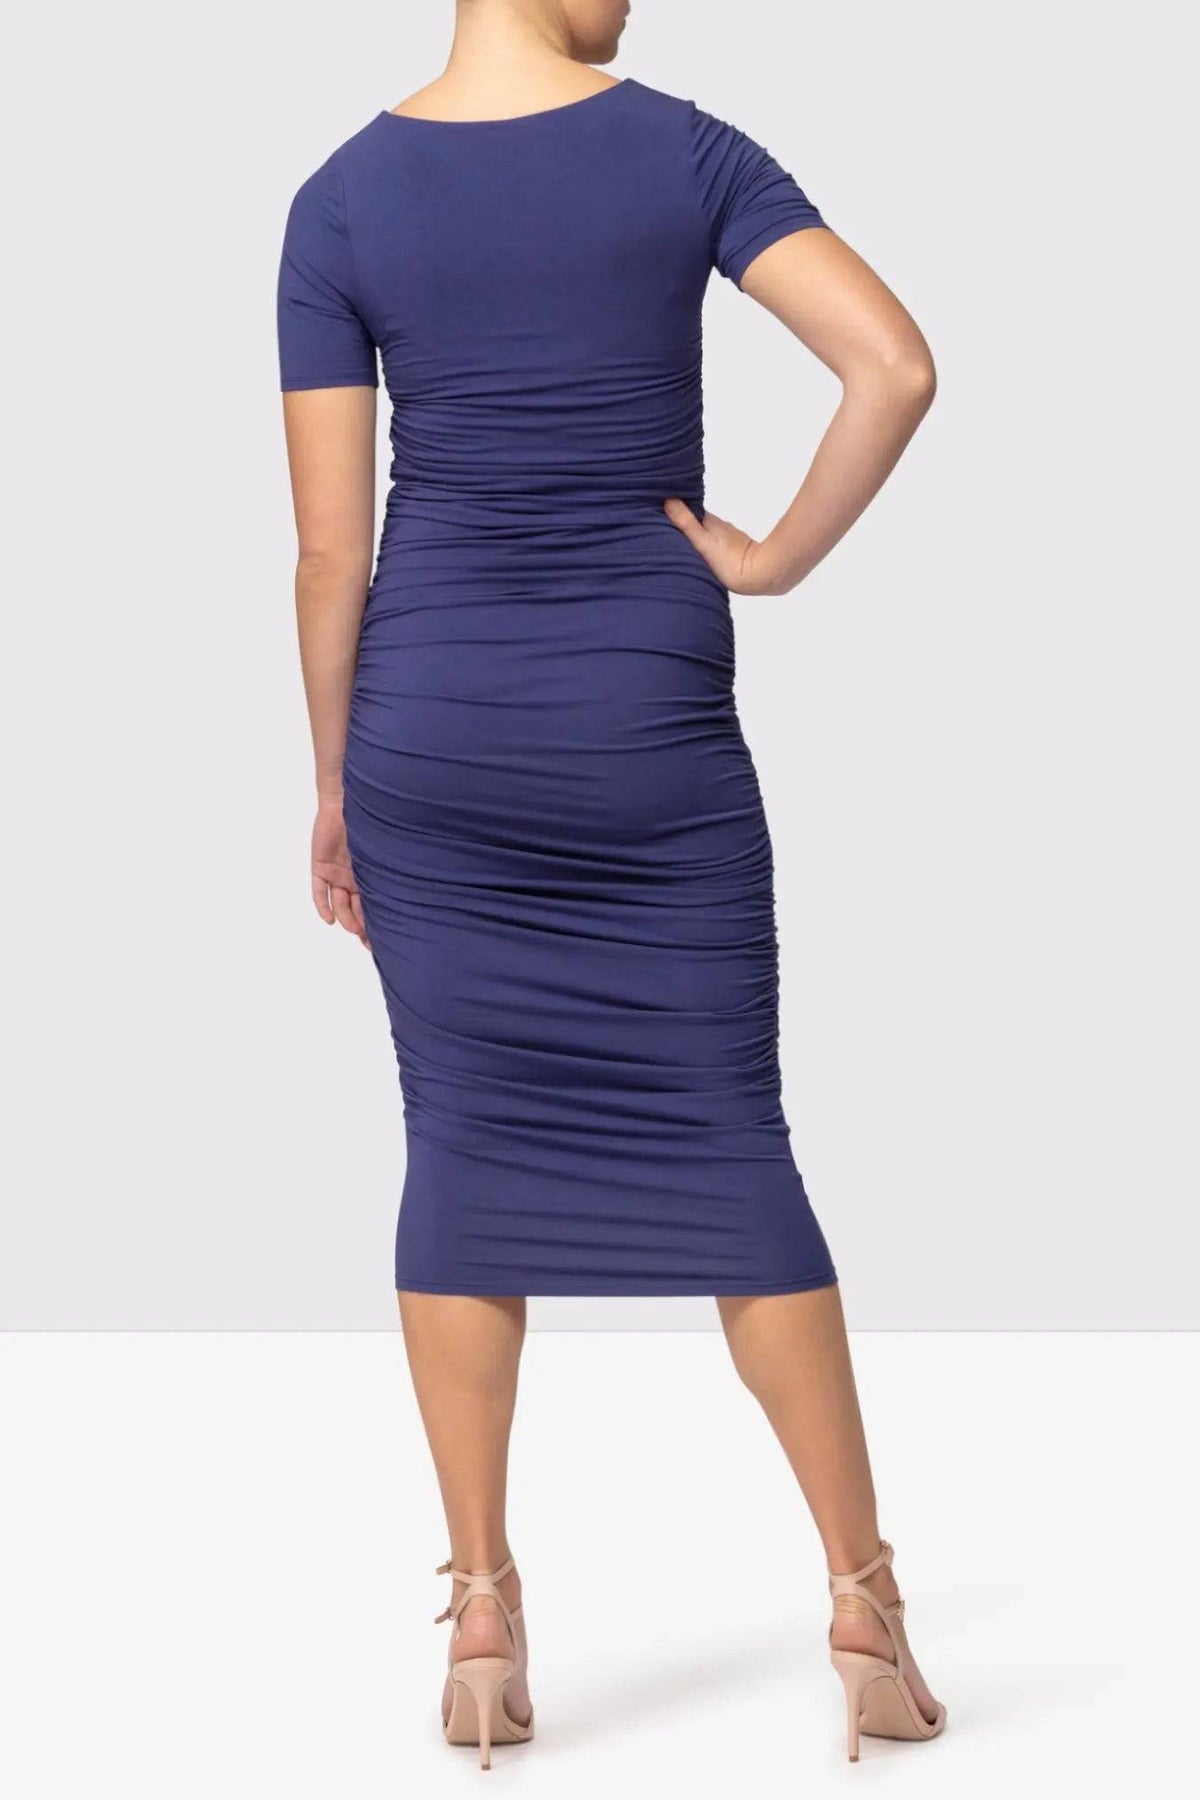 Embodycon™ Shaping Bodycon Dress - Ocean Blue Embodycon